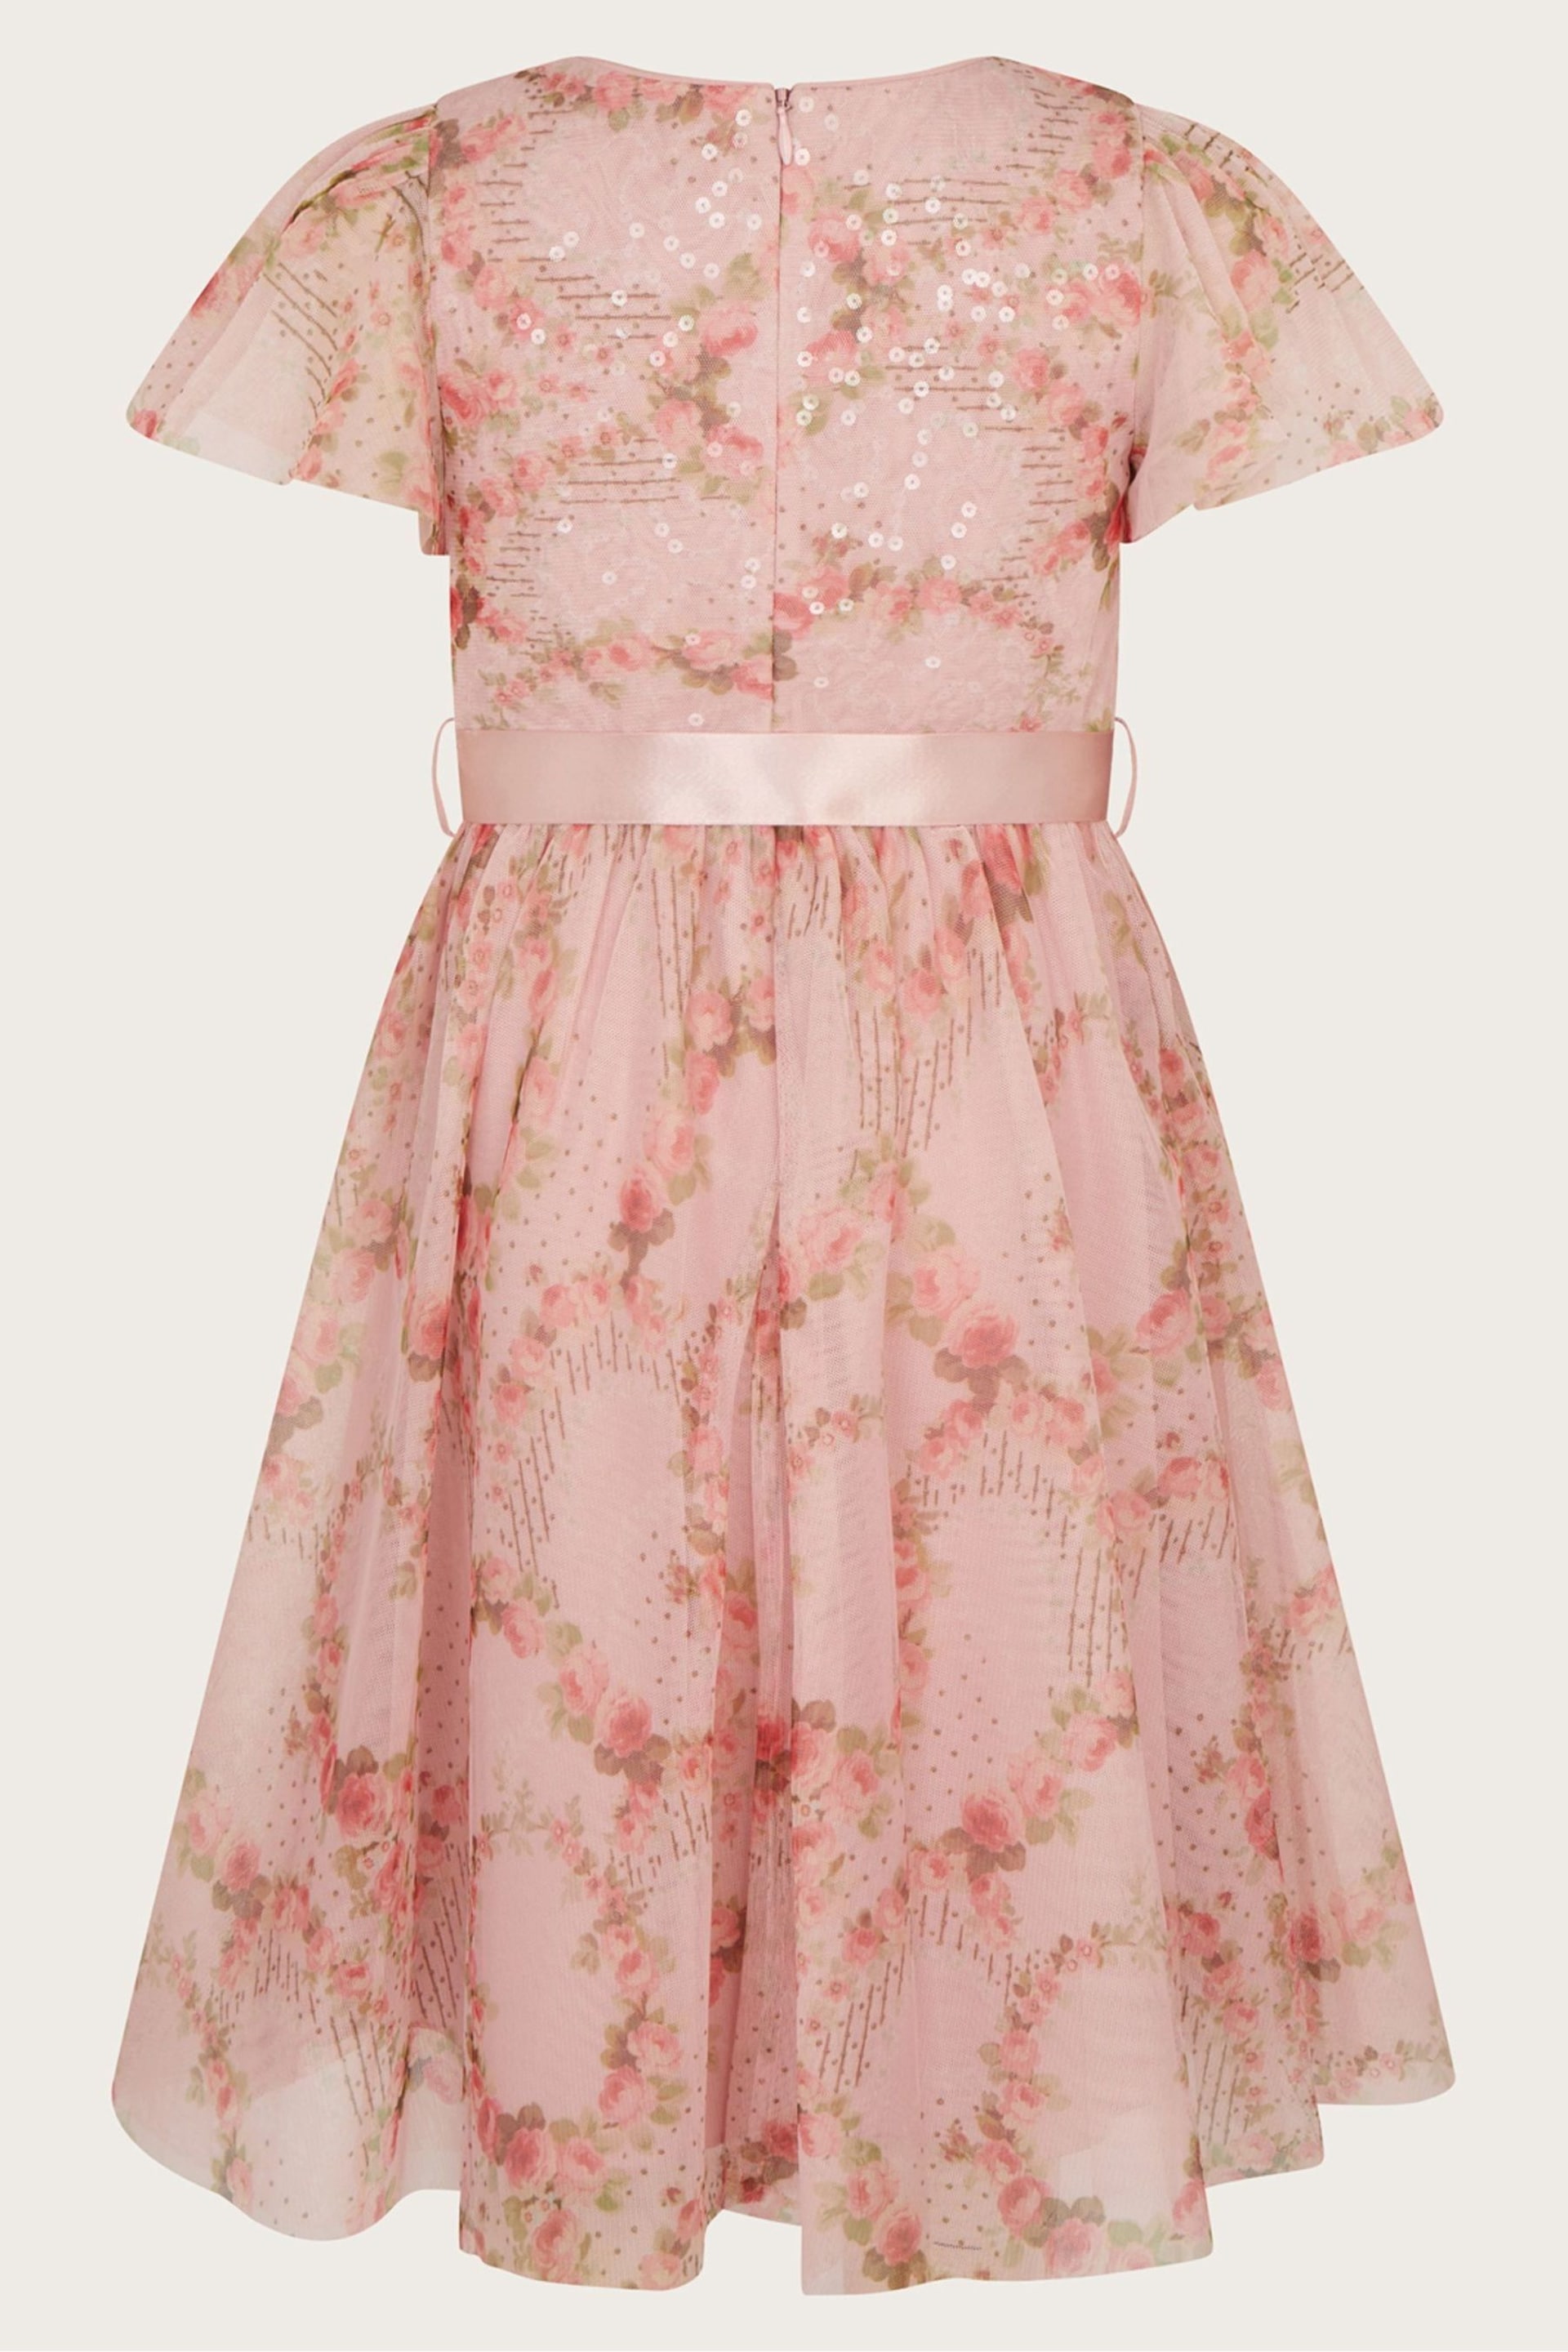 Monsoon Pink Rose Print Dress - Image 2 of 3